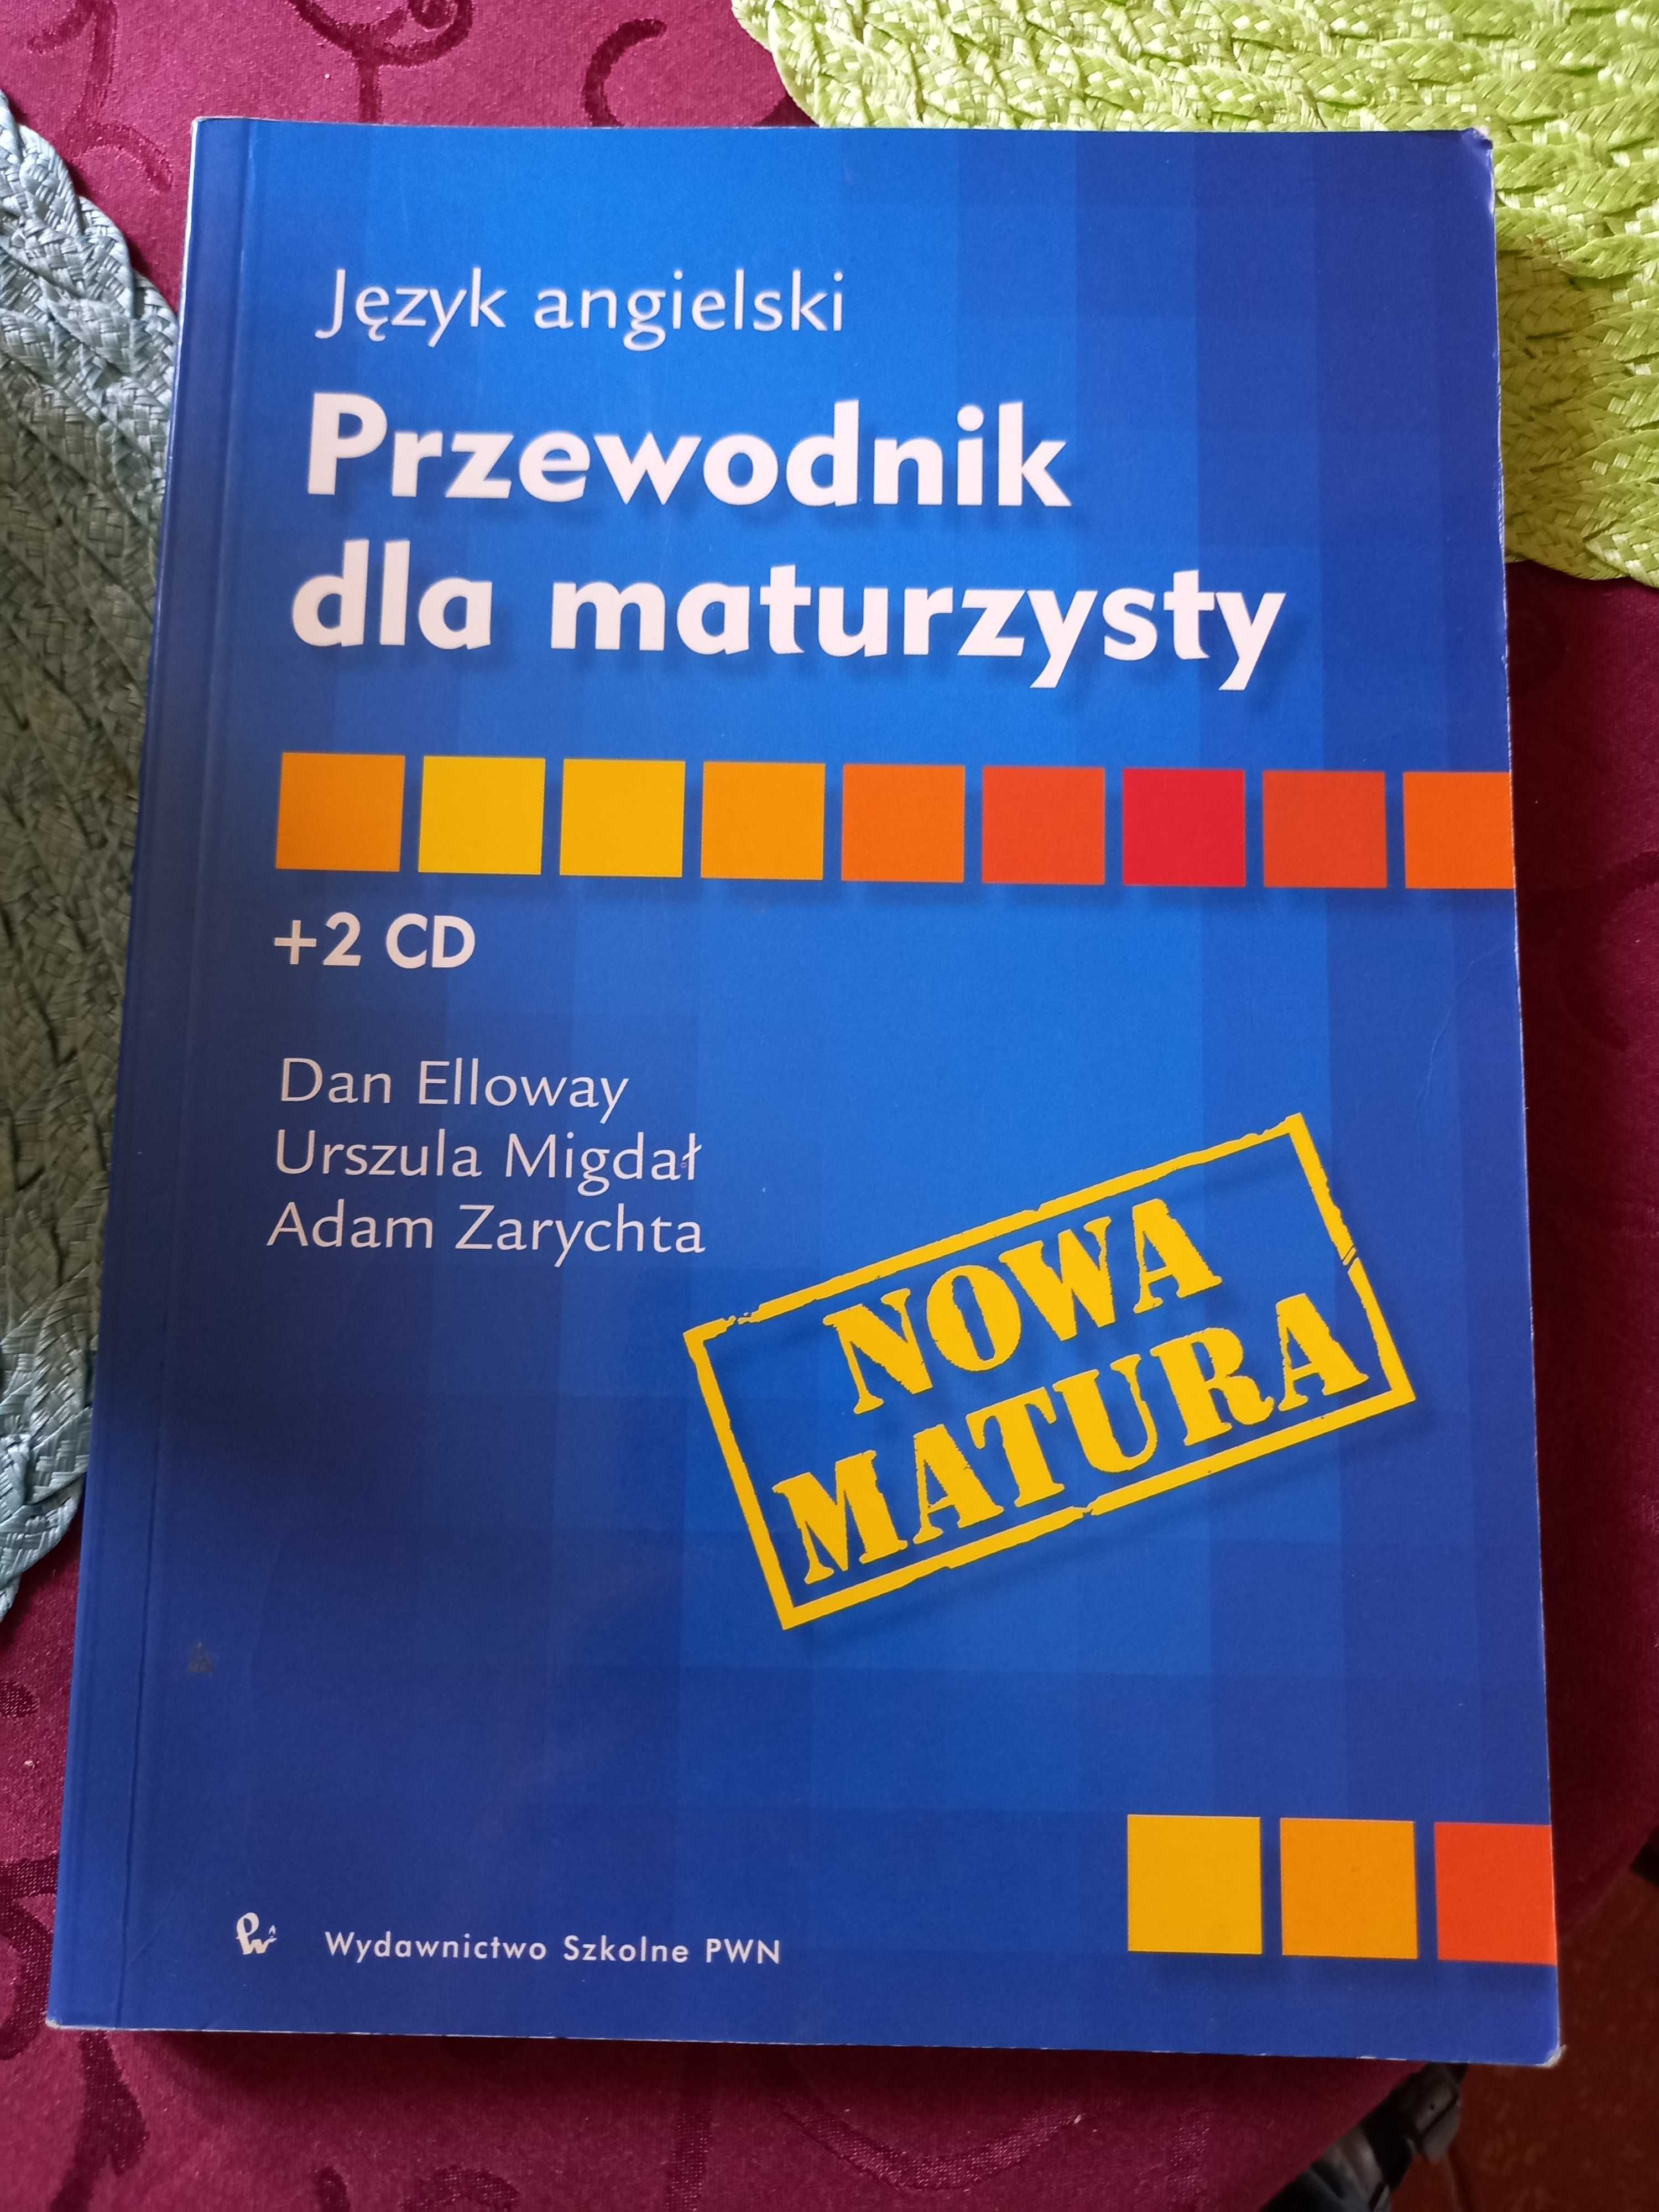 "Język angielski : Przewodnik dla maturzysty", PWN, 2002